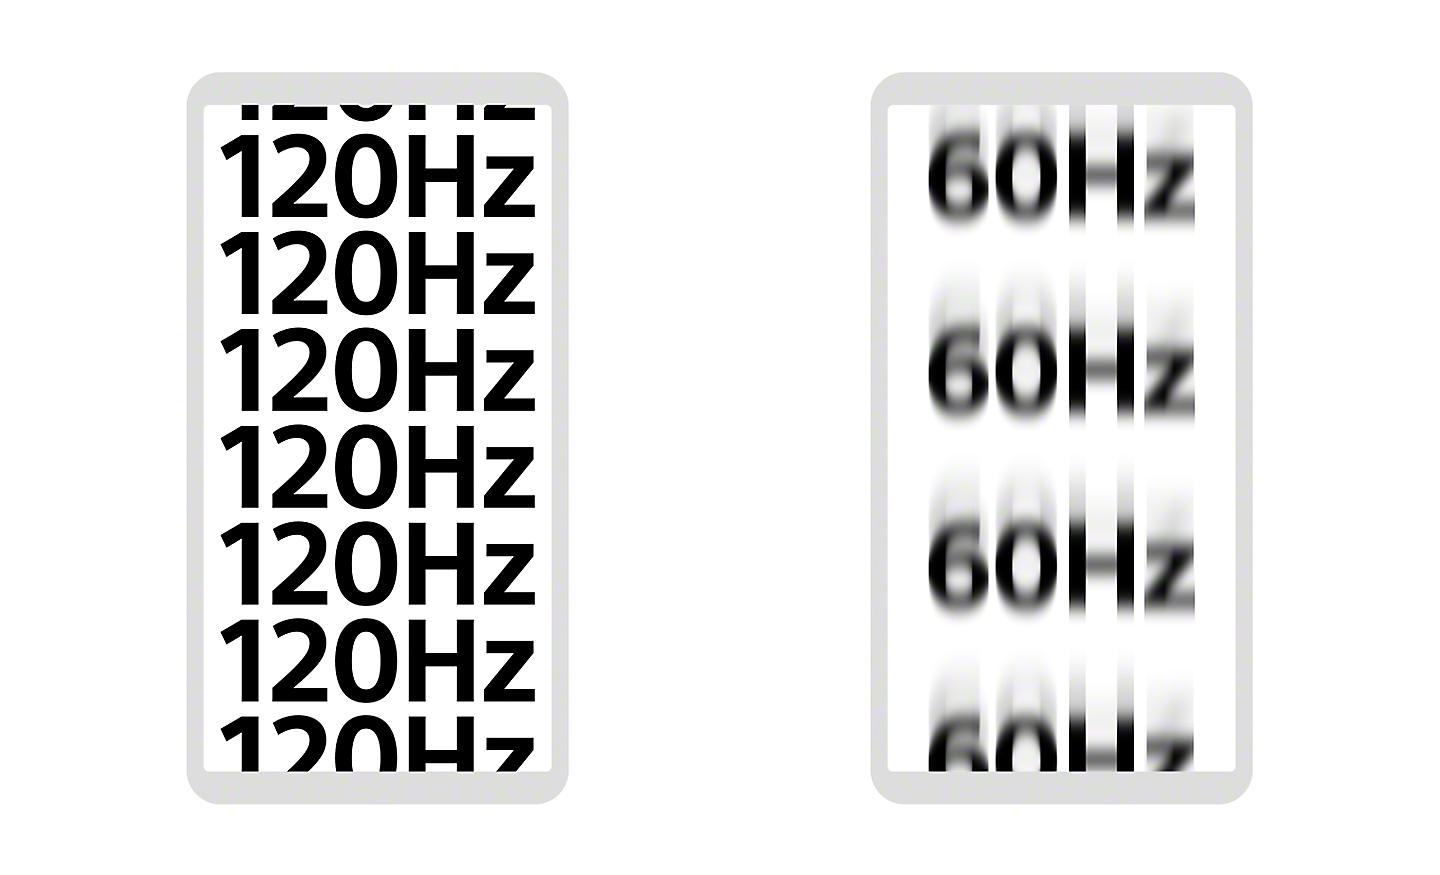 Ilustración de dos smartphones. Uno muestra "120Hz" varias veces en un texto nítido y el otro muestra 60 Hz en un texto borroso